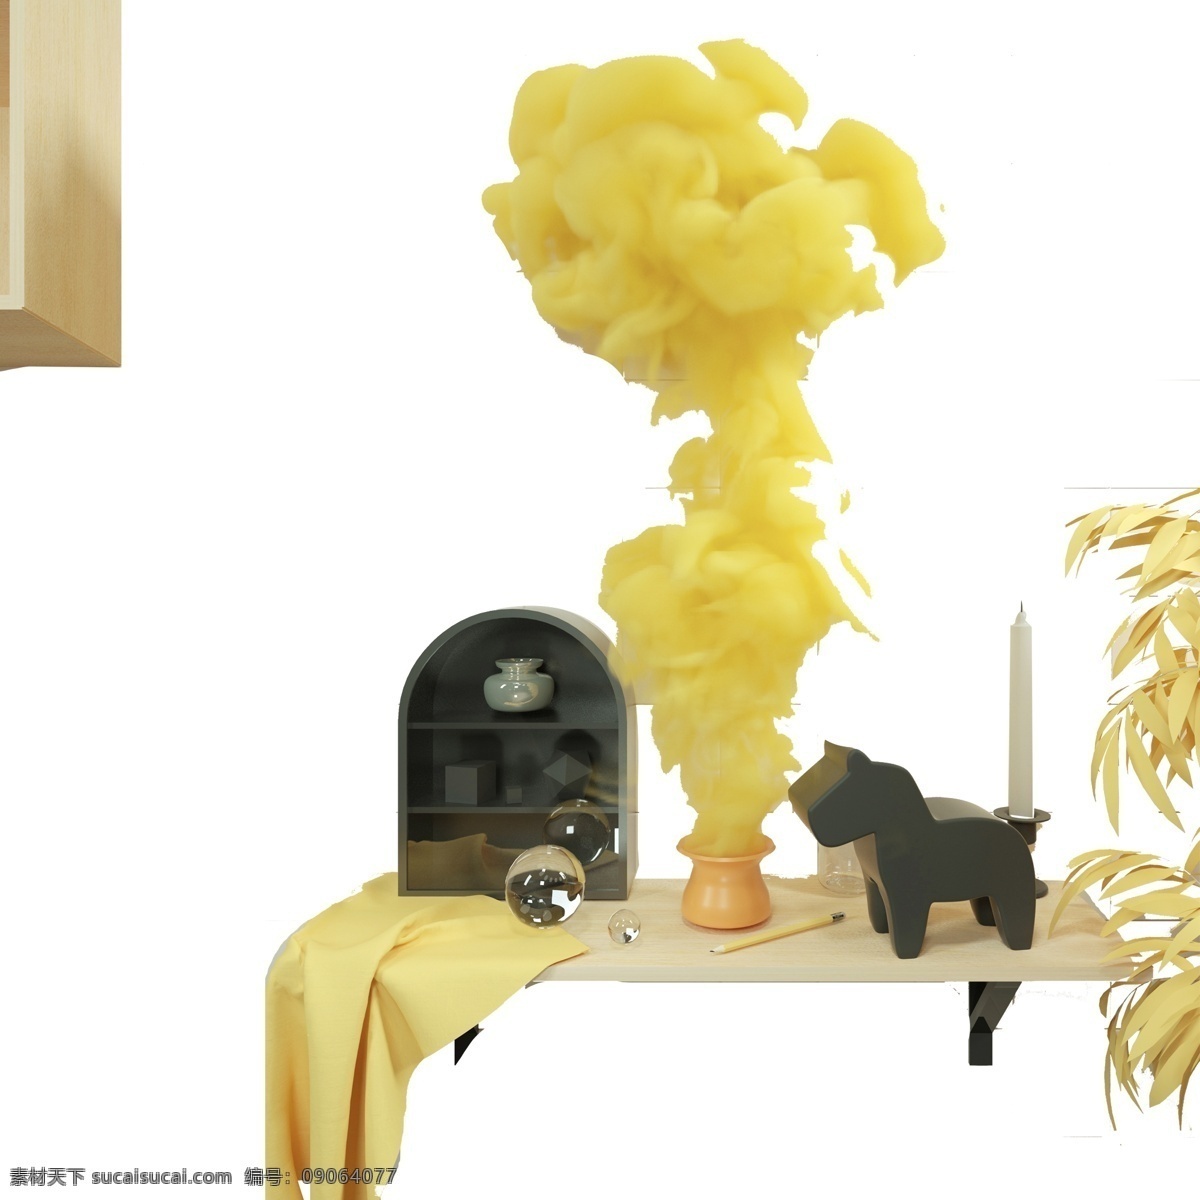 卡通 植物 小 玩具 免 抠 图 透明珠子 窗帘 黄色烟雾 漂亮的树叶子 时尚植物 盆景 盆栽 黄色的植物 免抠图